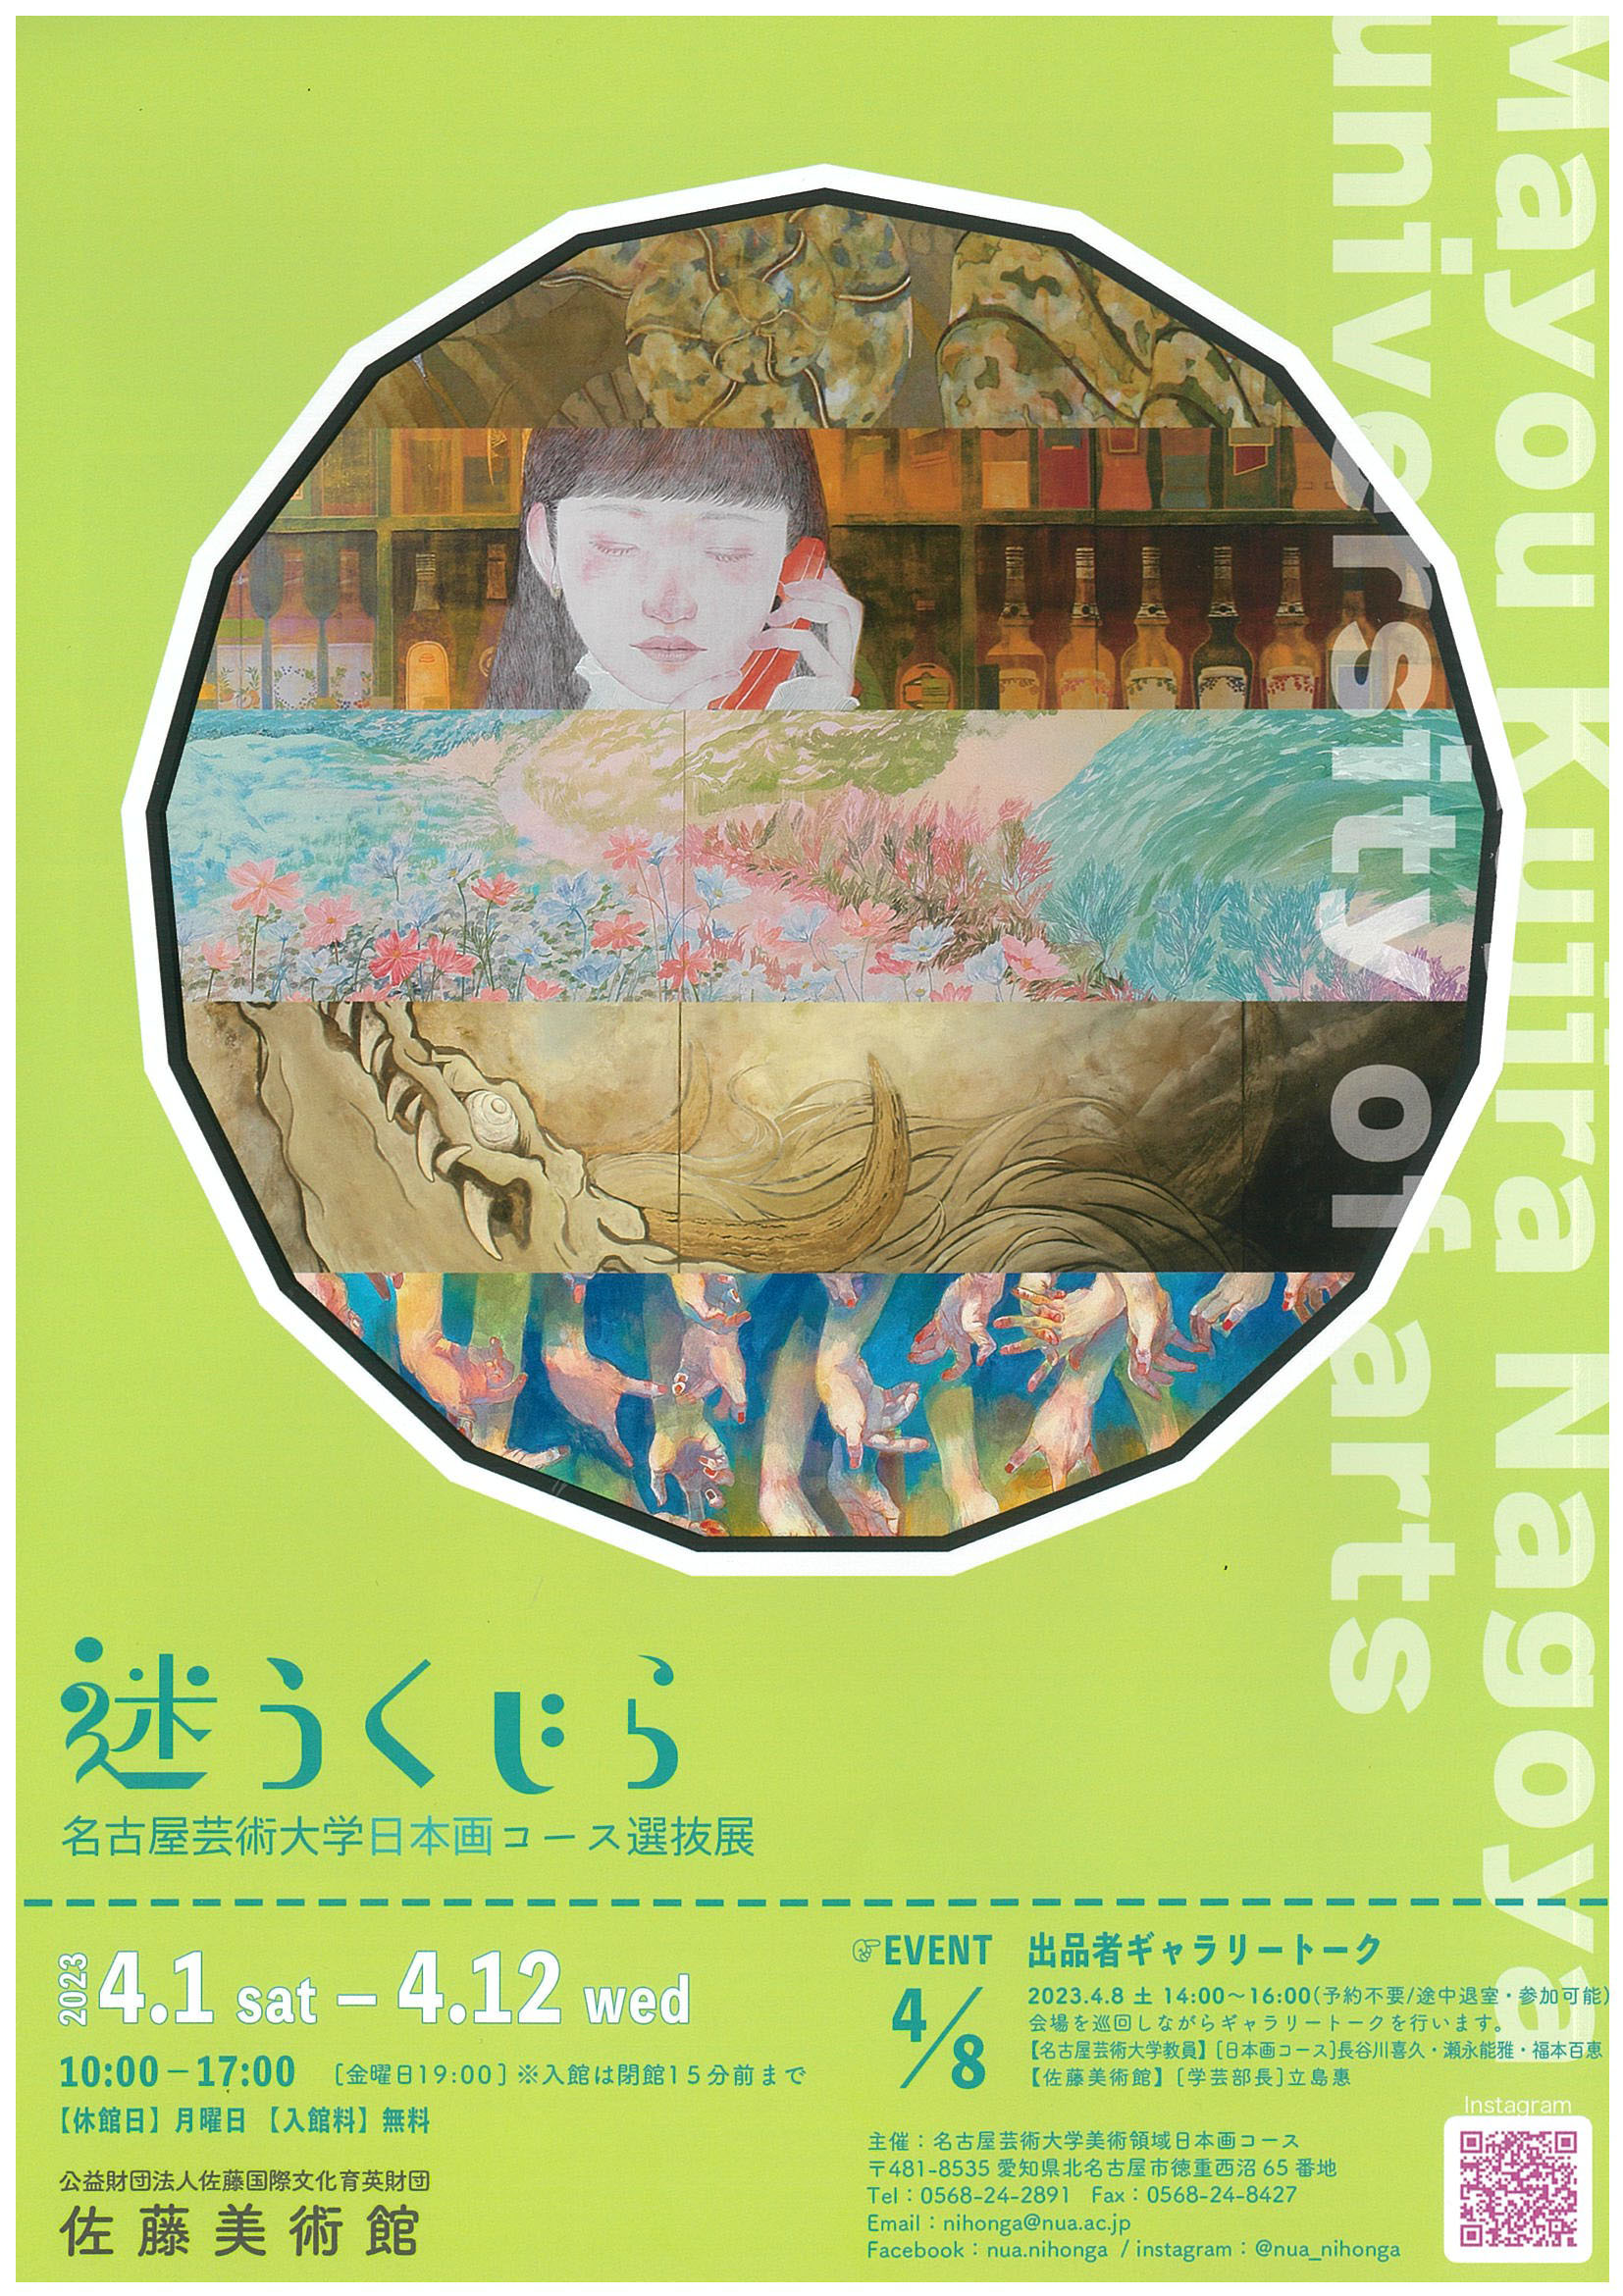 「迷うくじら」名古屋芸術大学日本画コース選抜展 表面